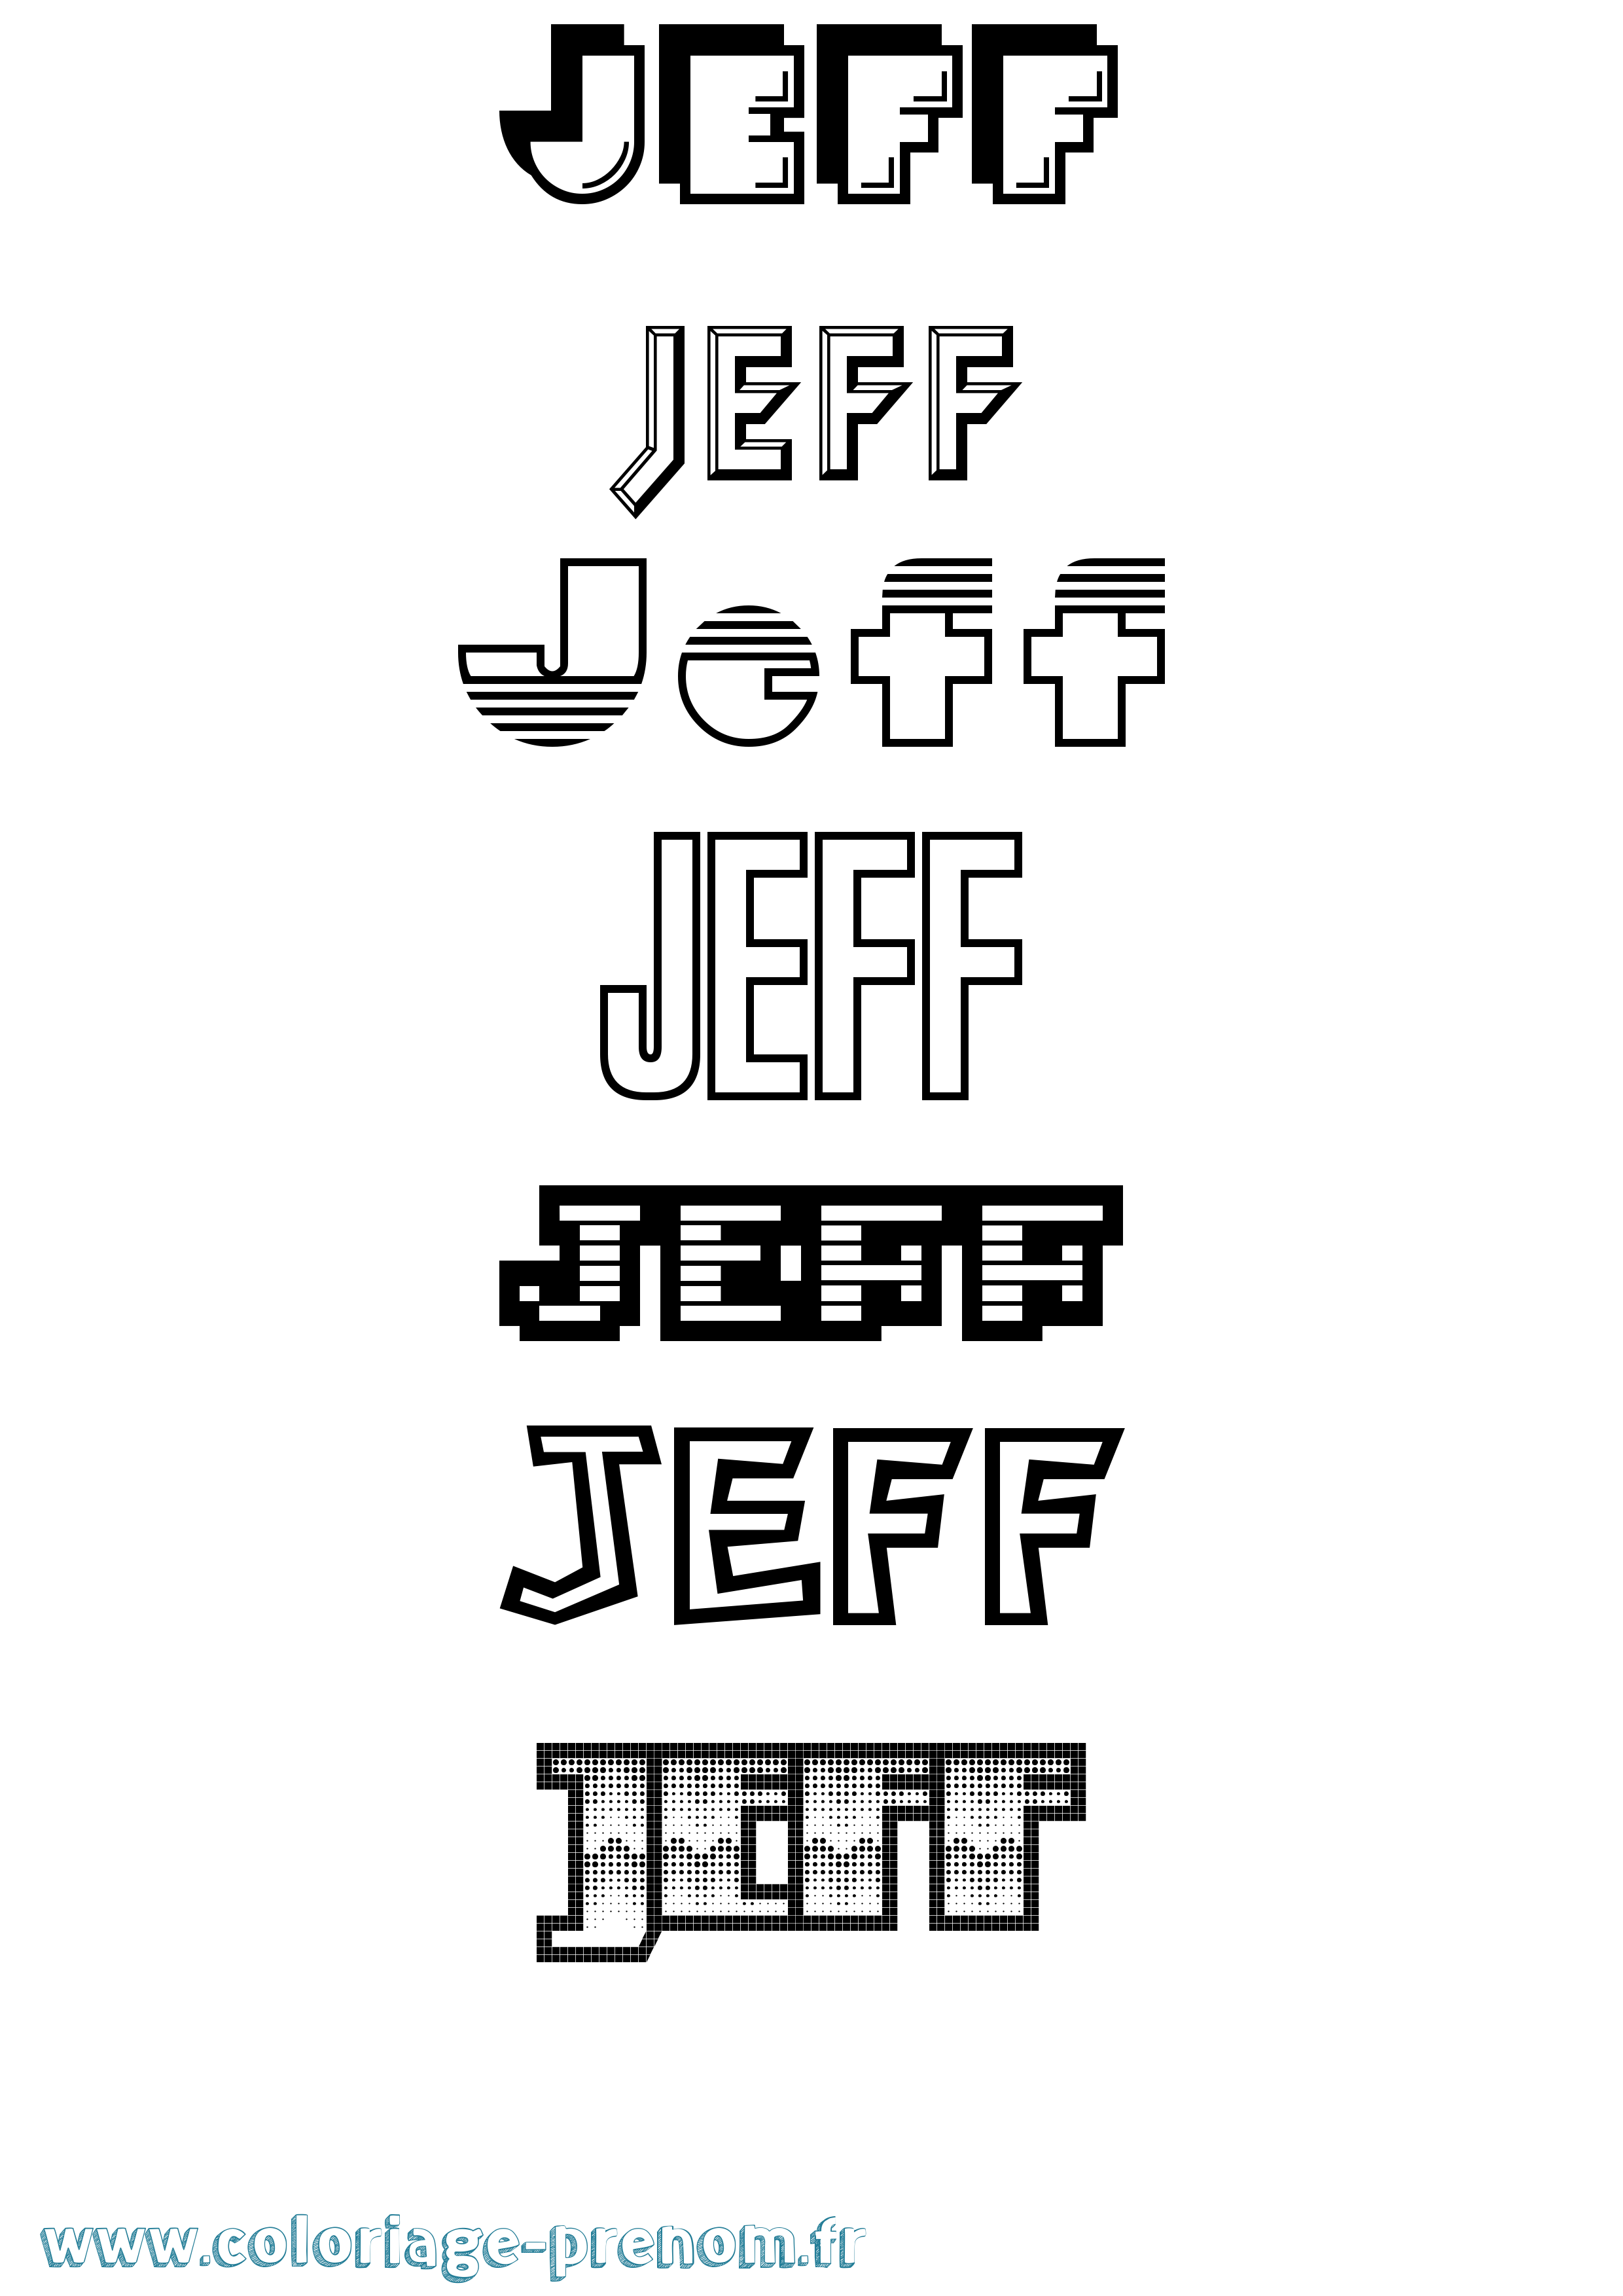 Coloriage prénom Jeff Jeux Vidéos